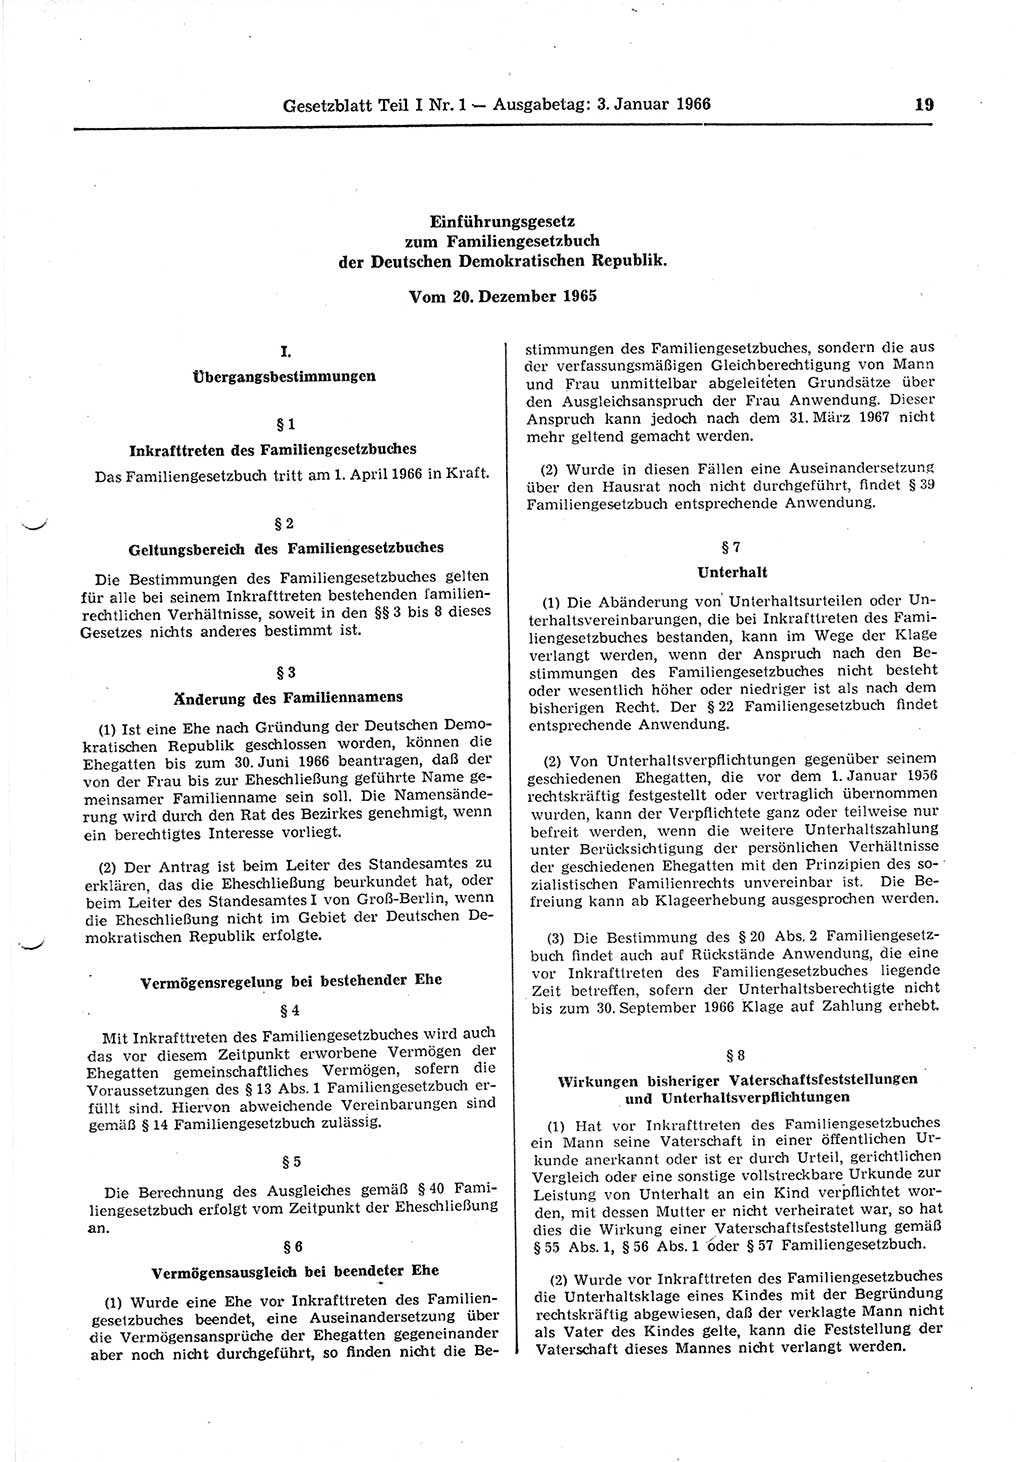 Gesetzblatt (GBl.) der Deutschen Demokratischen Republik (DDR) Teil Ⅰ 1966, Seite 19 (GBl. DDR Ⅰ 1966, S. 19)